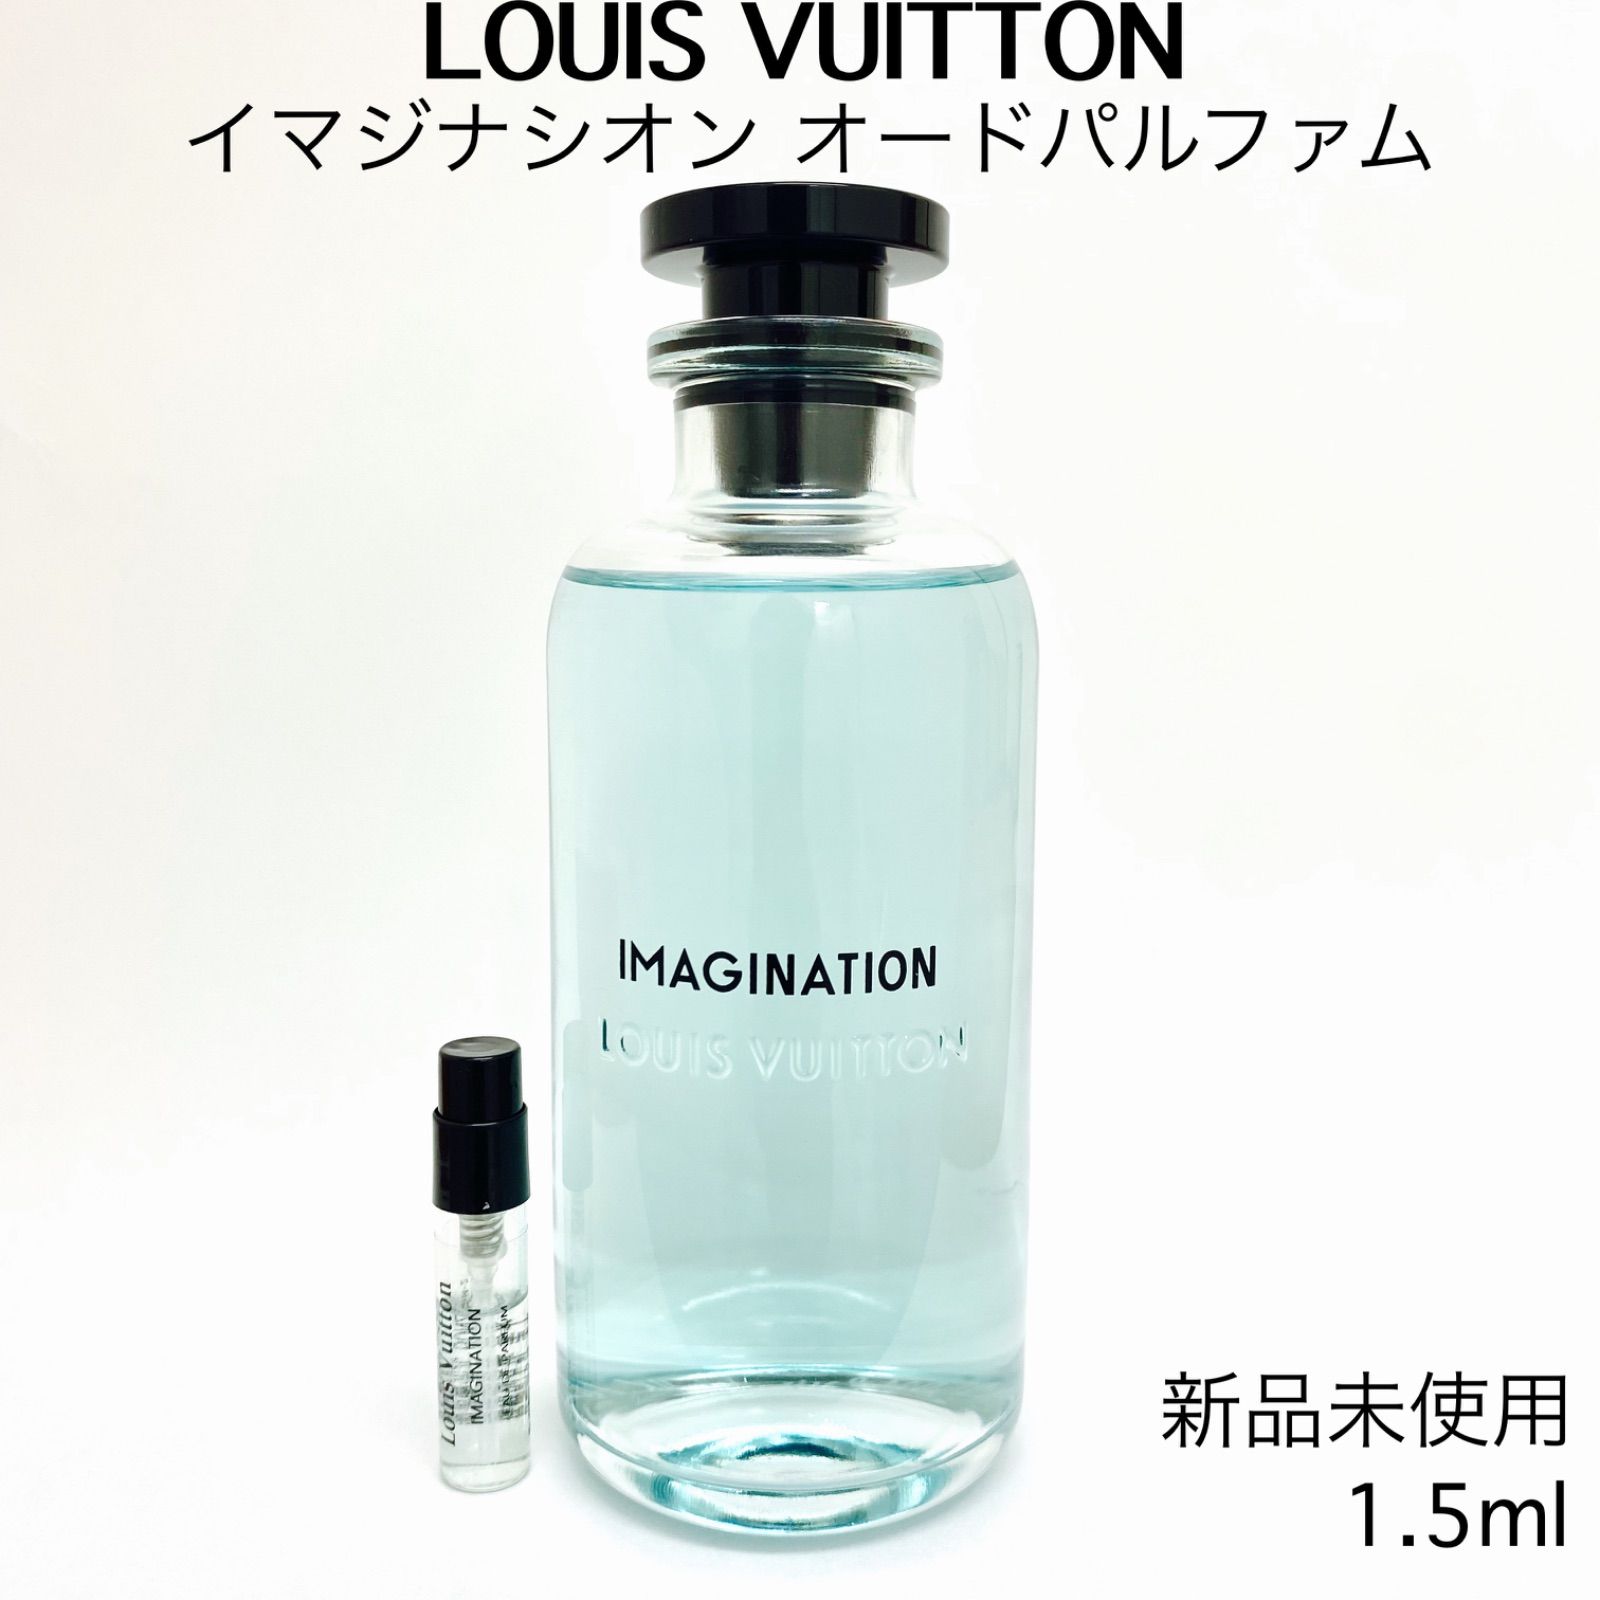 Unboxing 3 Louis Vuitton Colognes! NOUVEAU MONDE - IMAGINATION